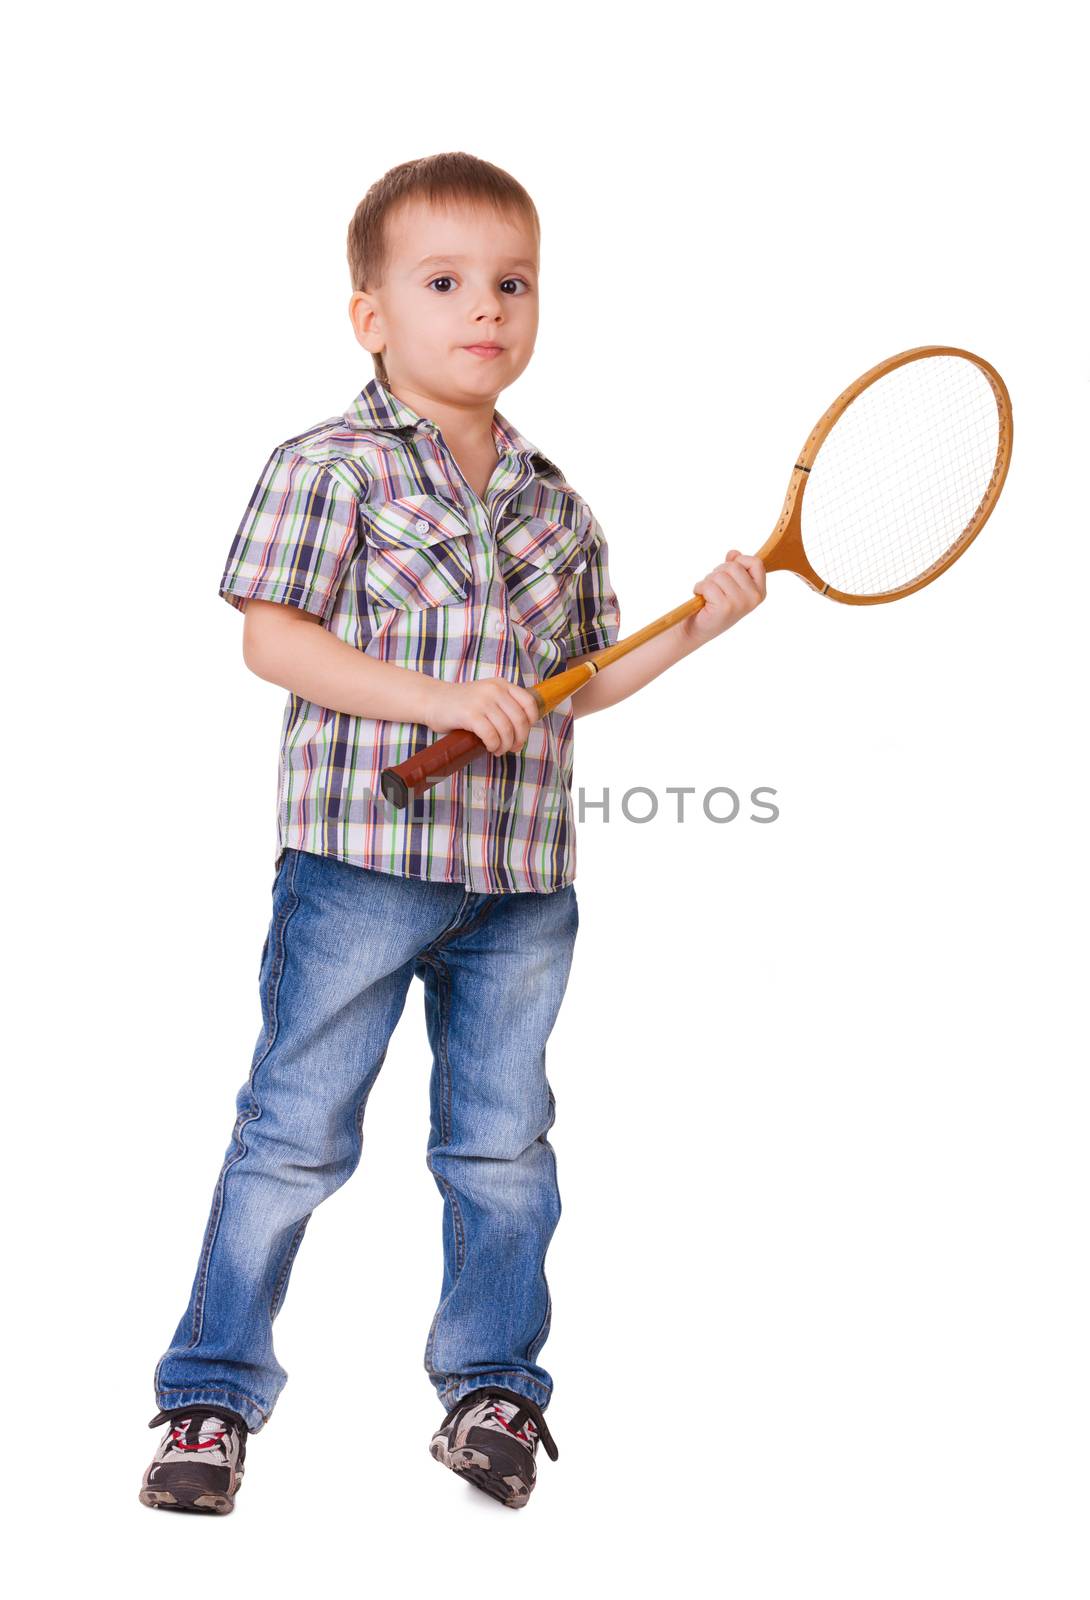 Boy with badminton racket on white by iryna_rasko